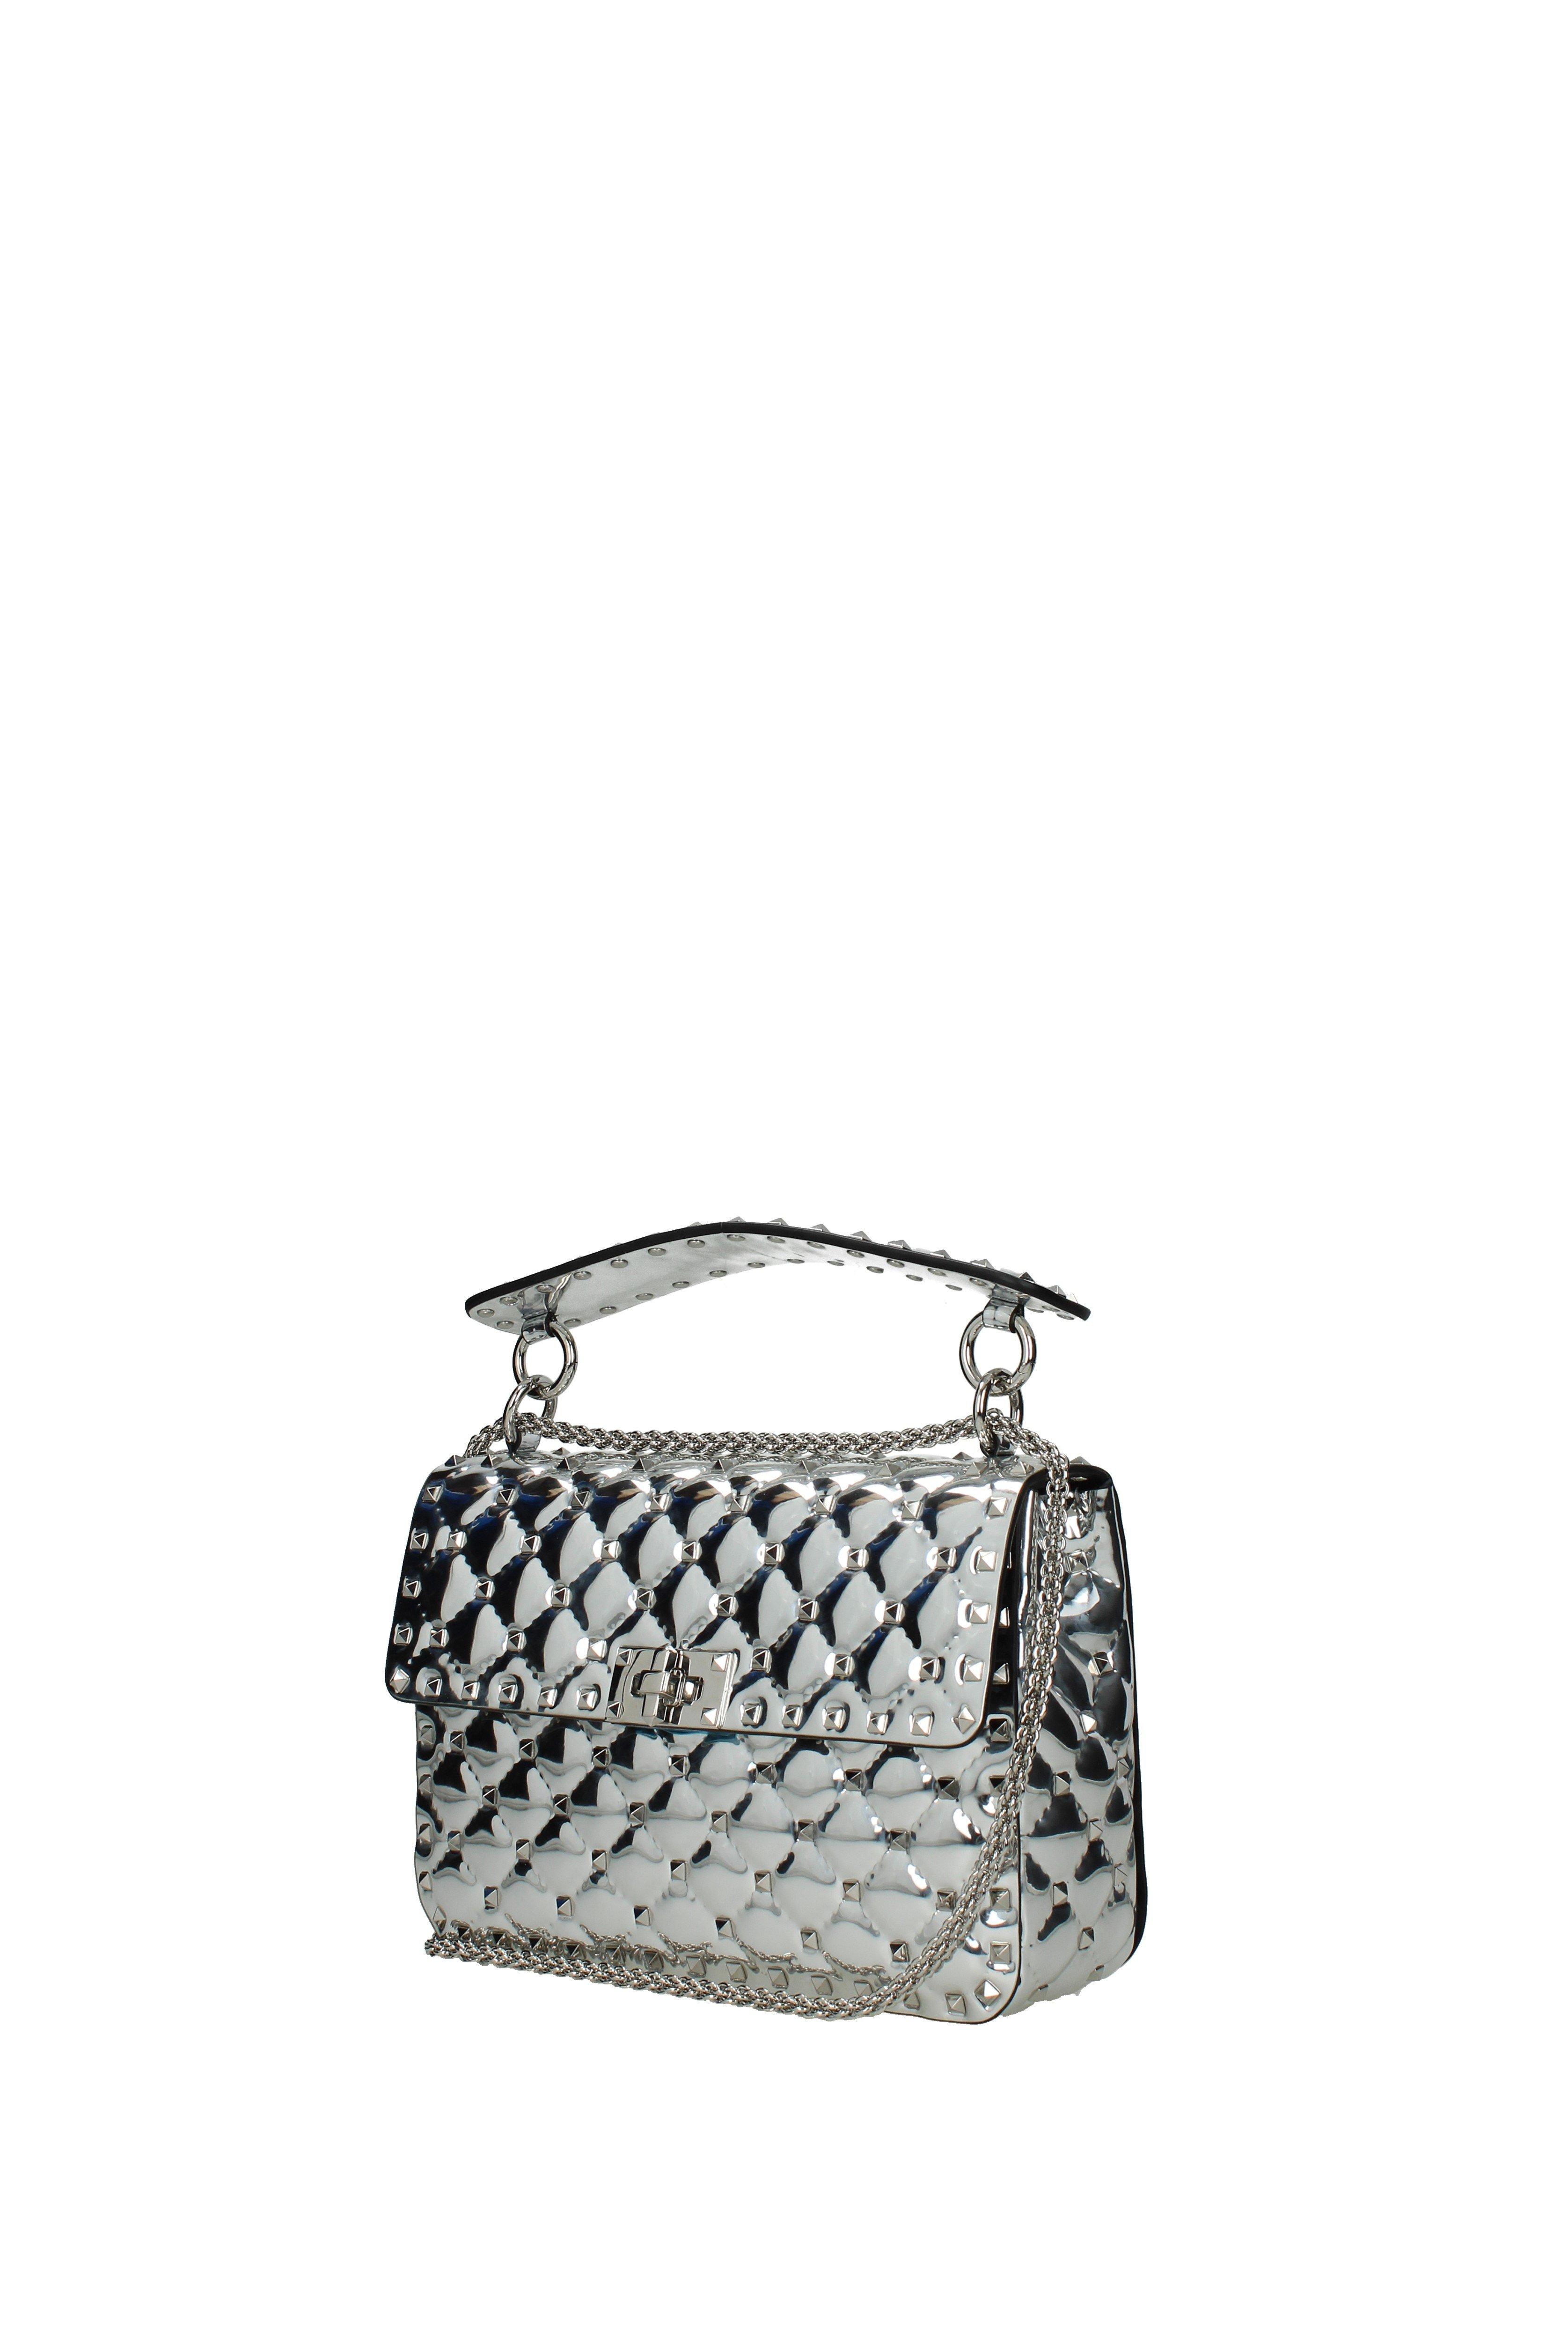 Valentino Silver Handbags Rockstud in Metallic - Lyst